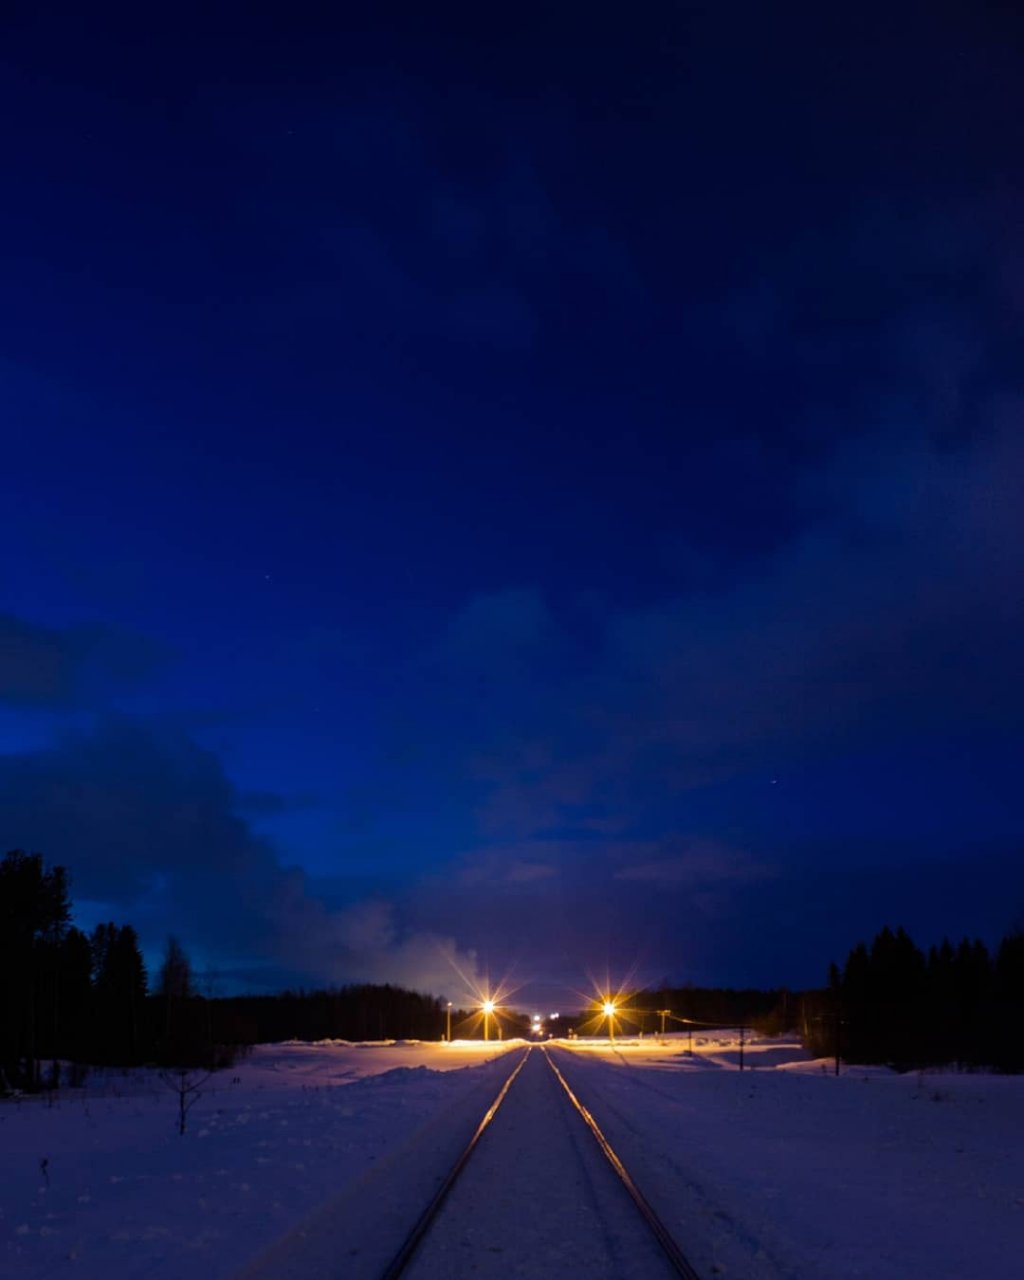 Фото дня от сыктывкарца: железная дорога в ночи